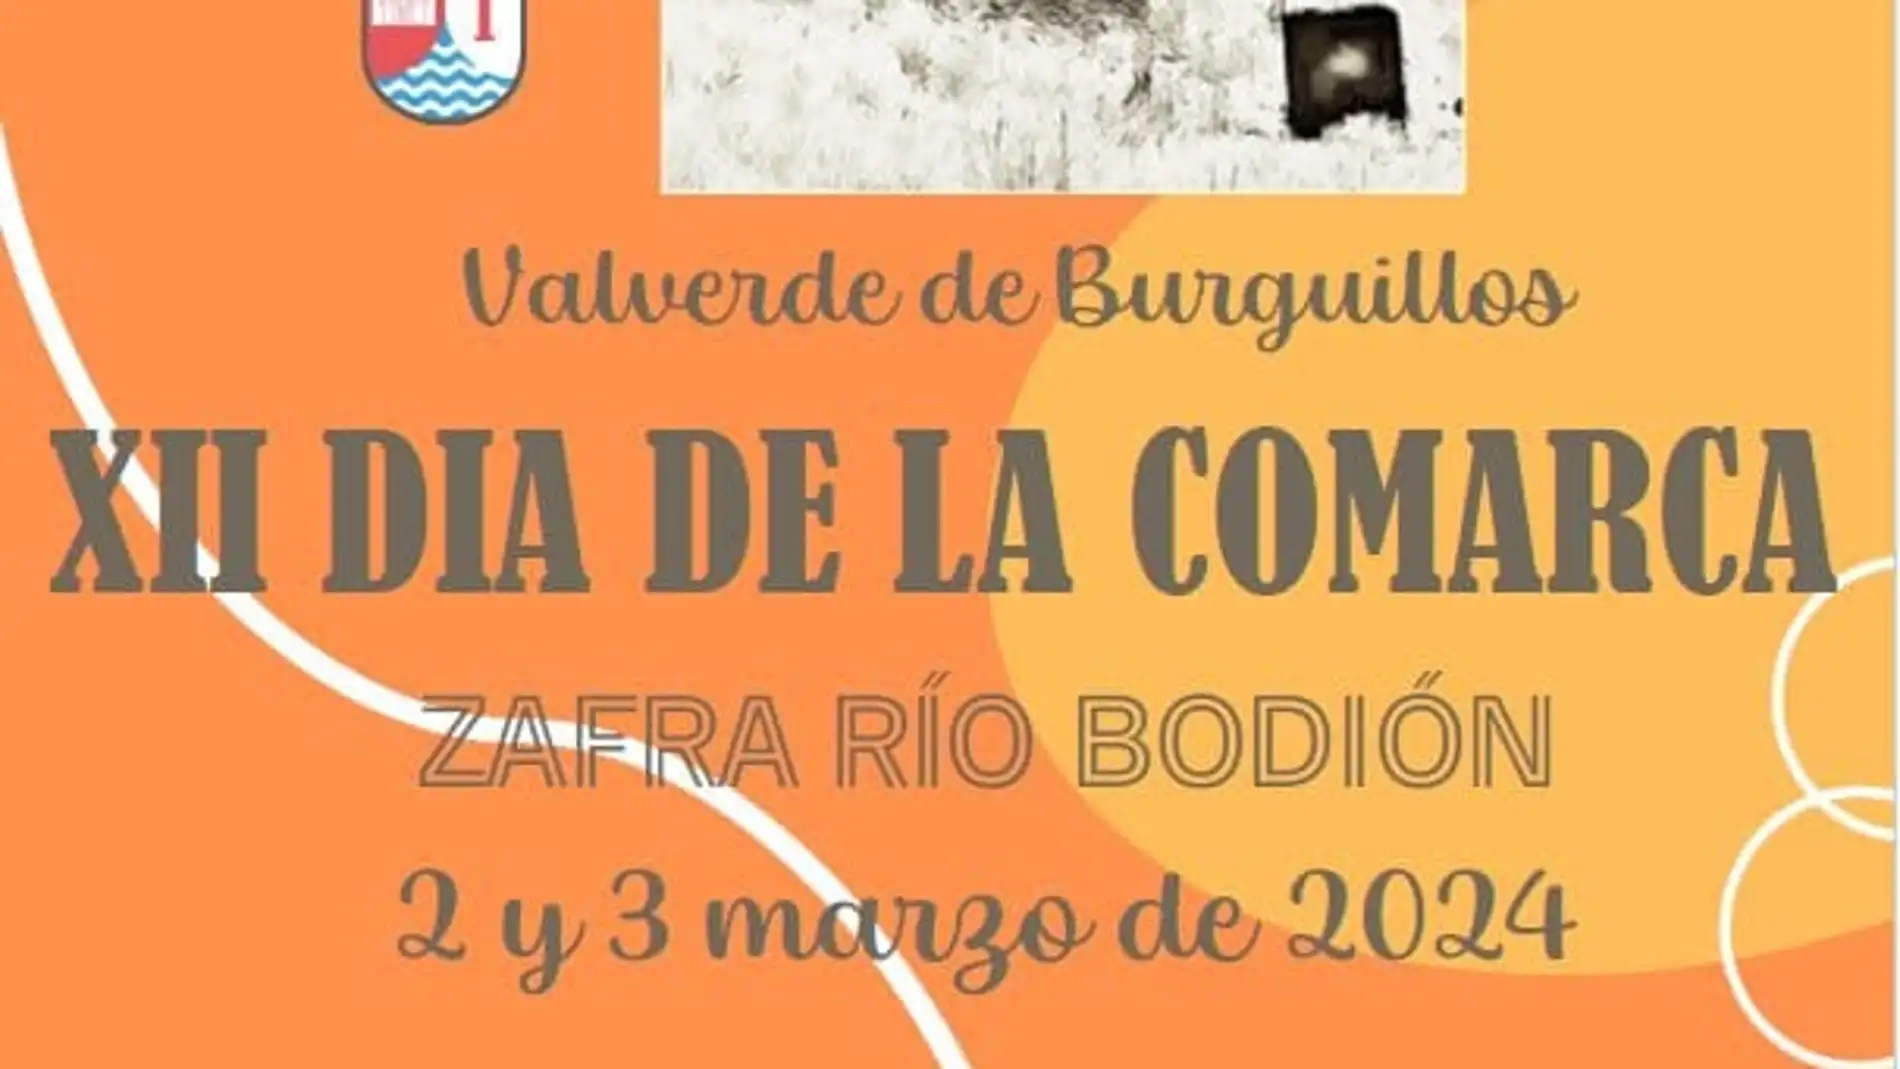 La Junta anima a los vecinos de la comarca Zafra-Río Bodión a participar en acciones de lucha contra la despoblación 